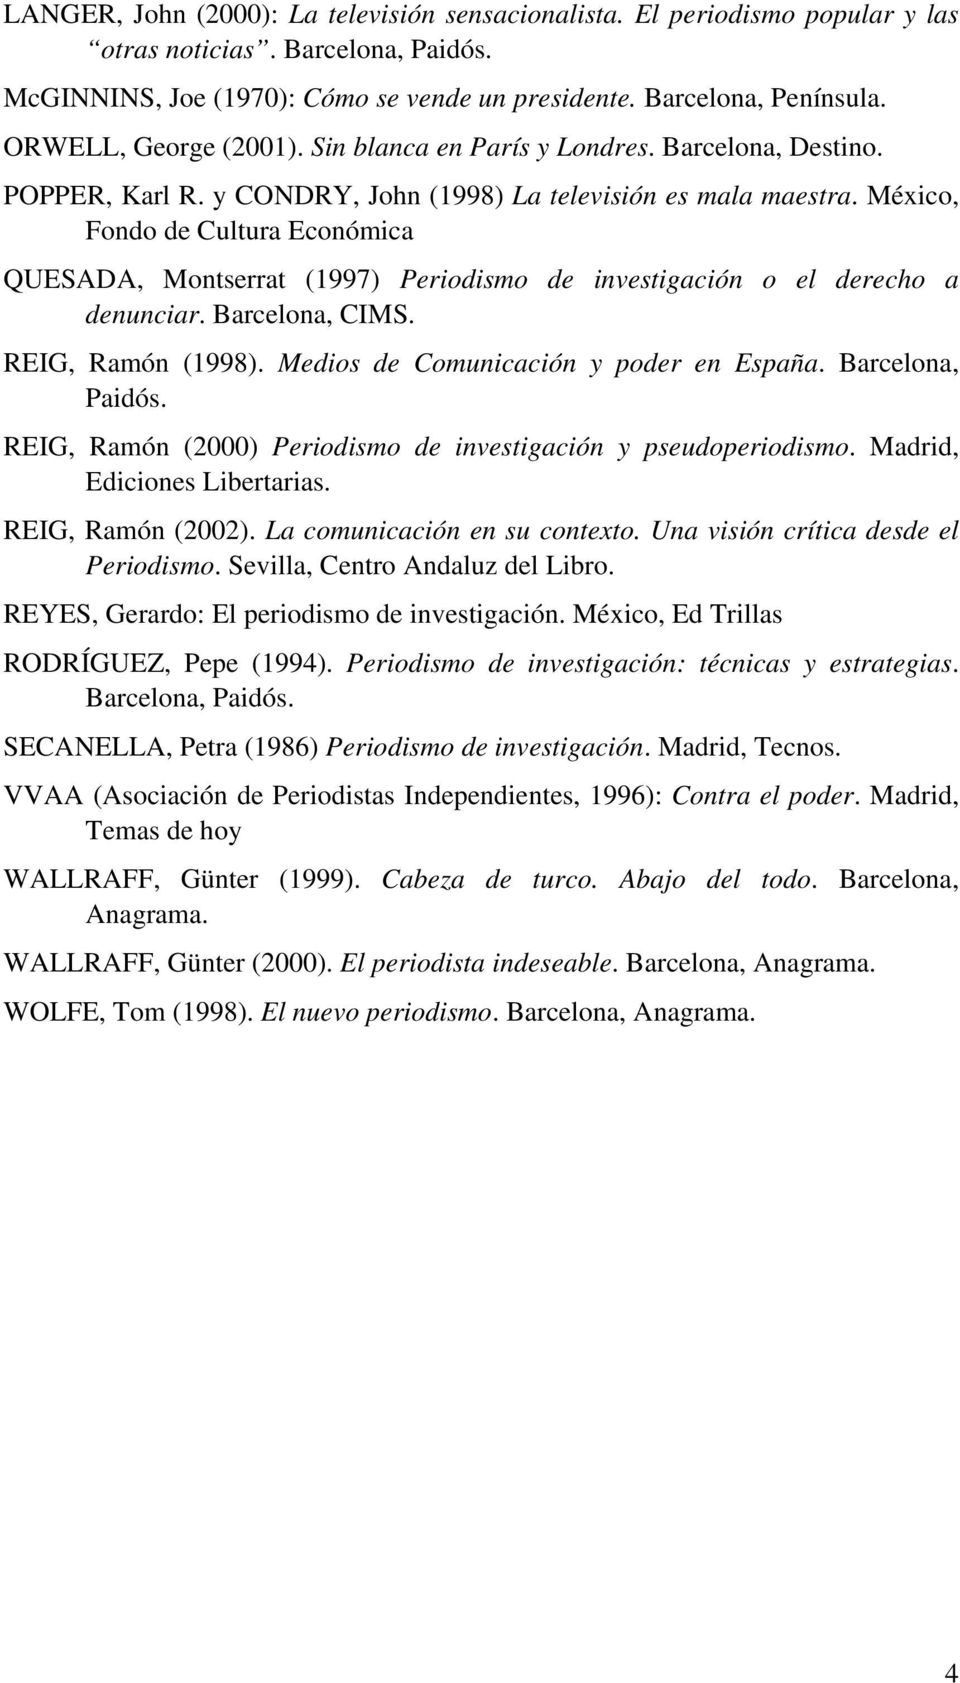 México, Fondo de Cultura Económica QUESADA, Montserrat (1997) Periodismo de investigación o el derecho a denunciar. Barcelona, CIMS. REIG, Ramón (1998). Medios de Comunicación y poder en España.